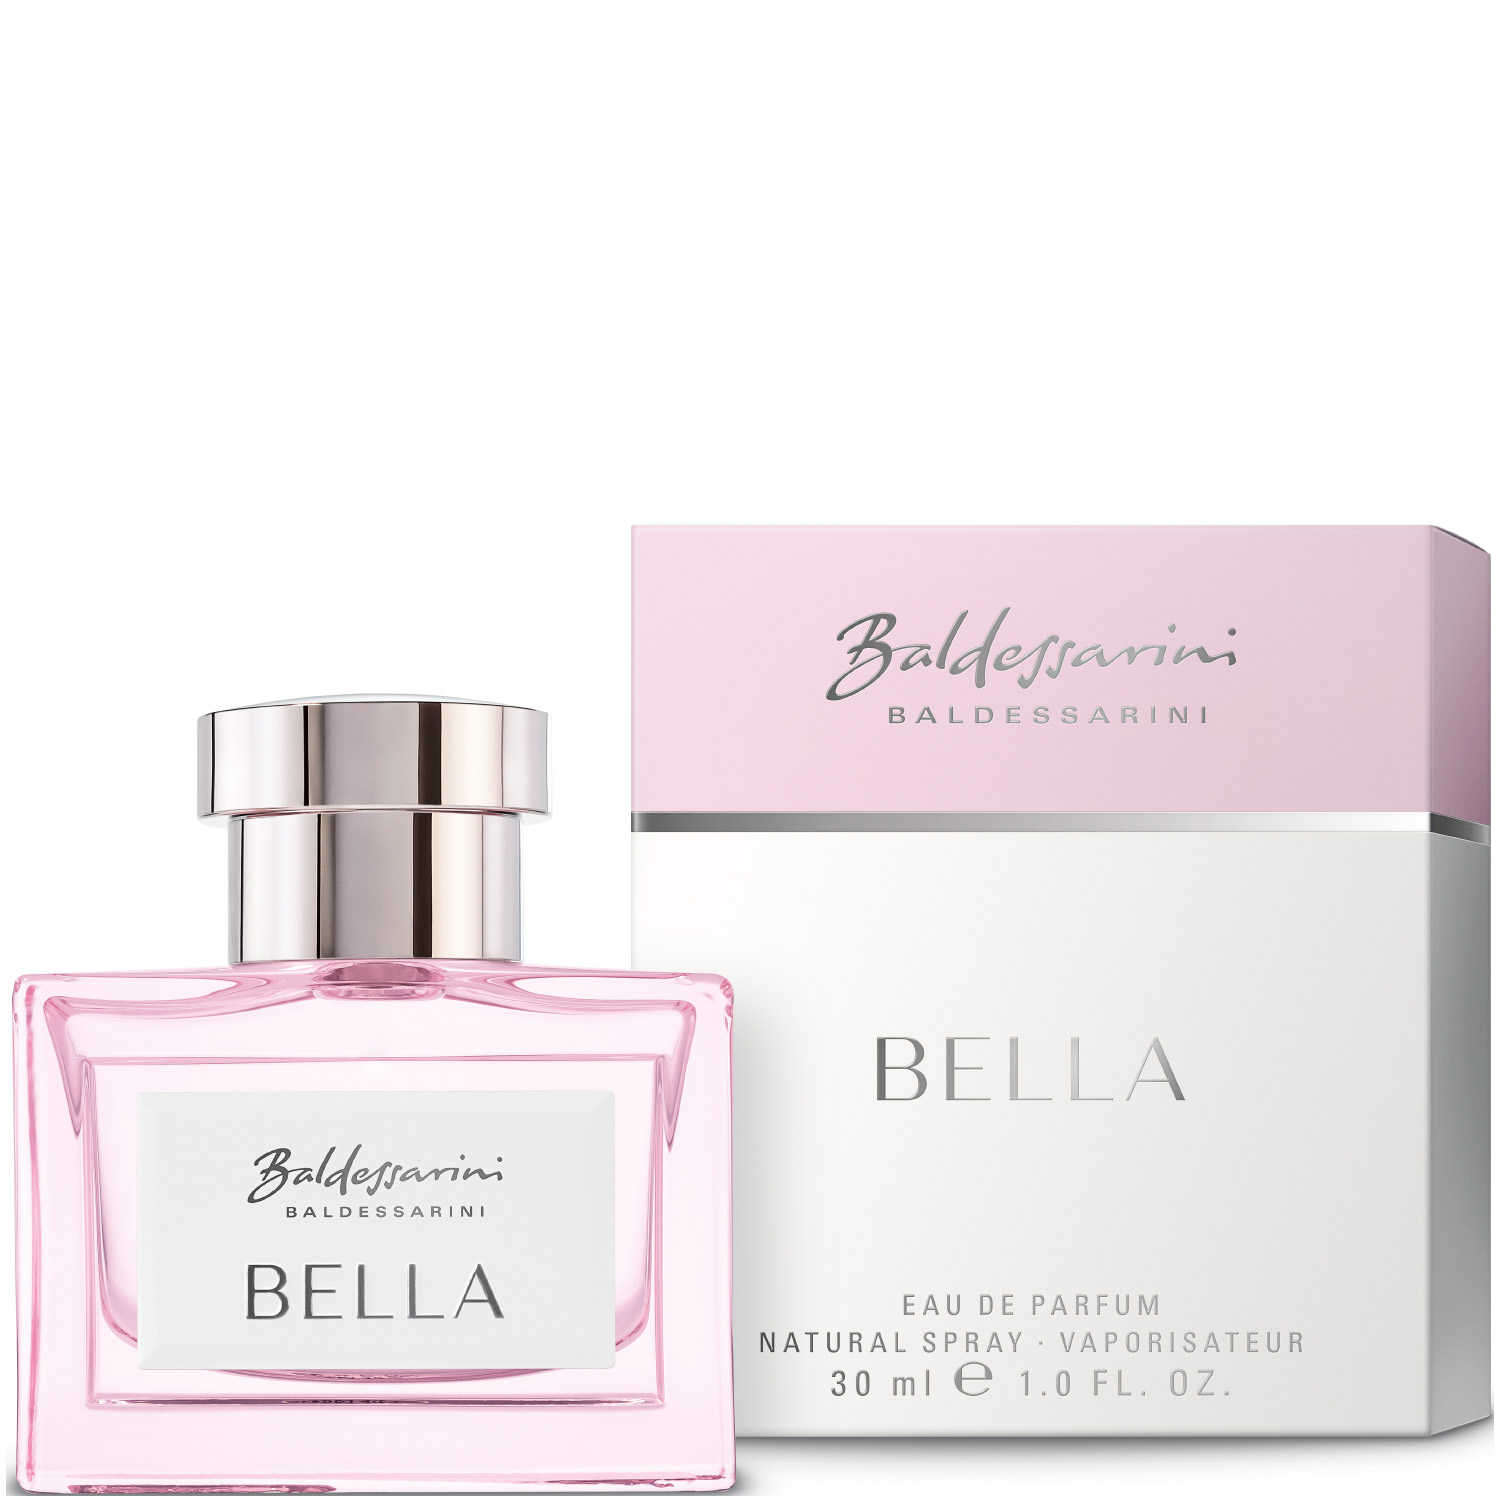 Baldessarini Bella Eau de Parfum 30ml